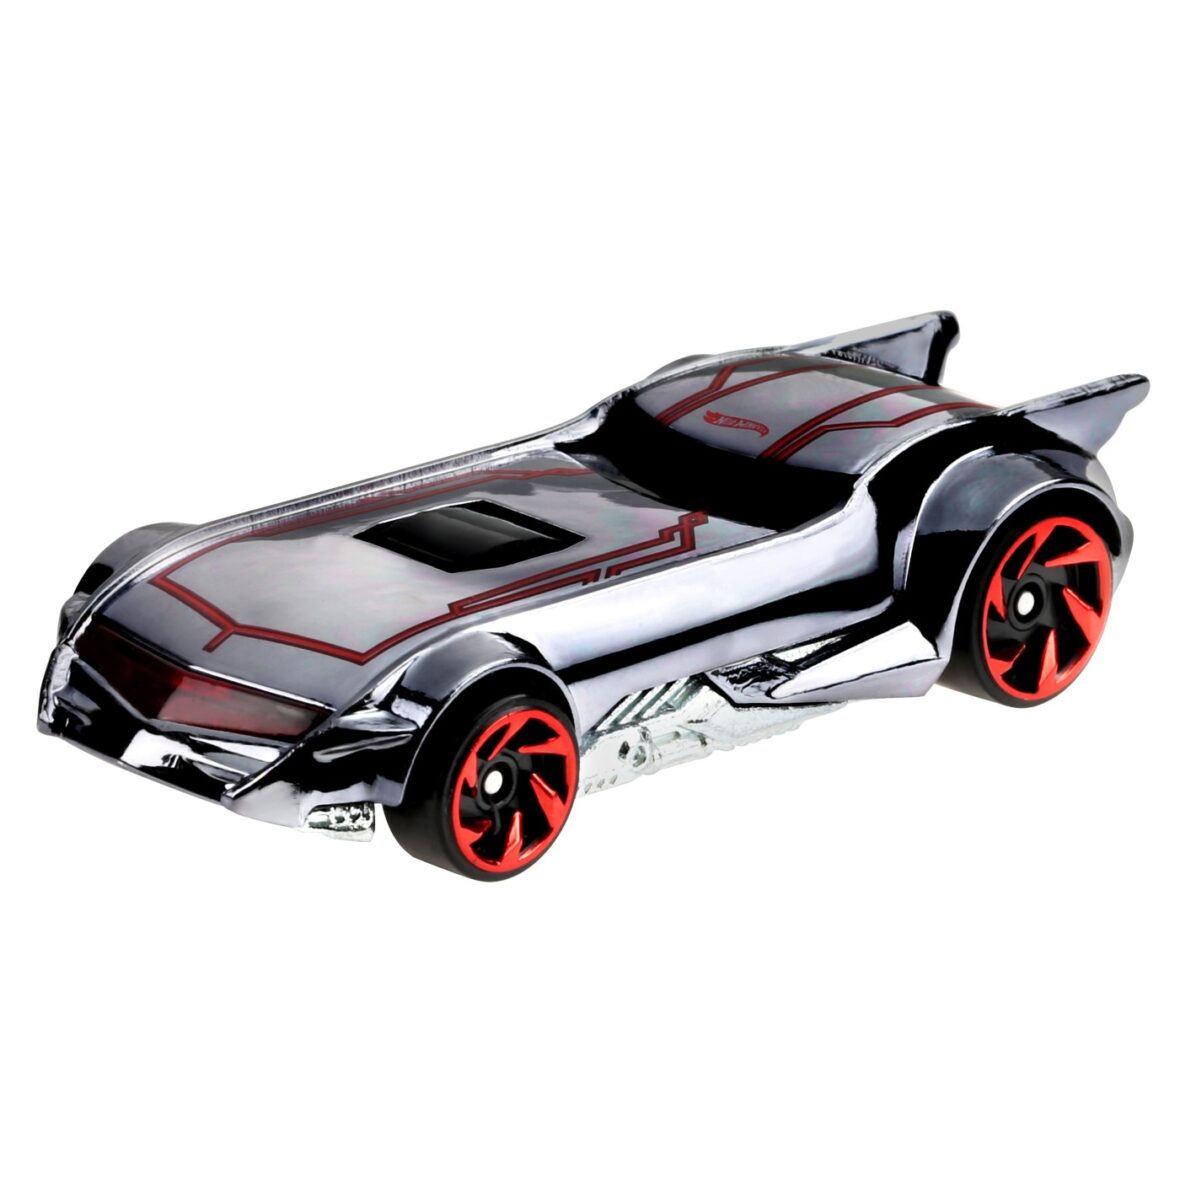 Hot Wheels Masina Metalica Tematica Batman Batmobile Scara 1:64